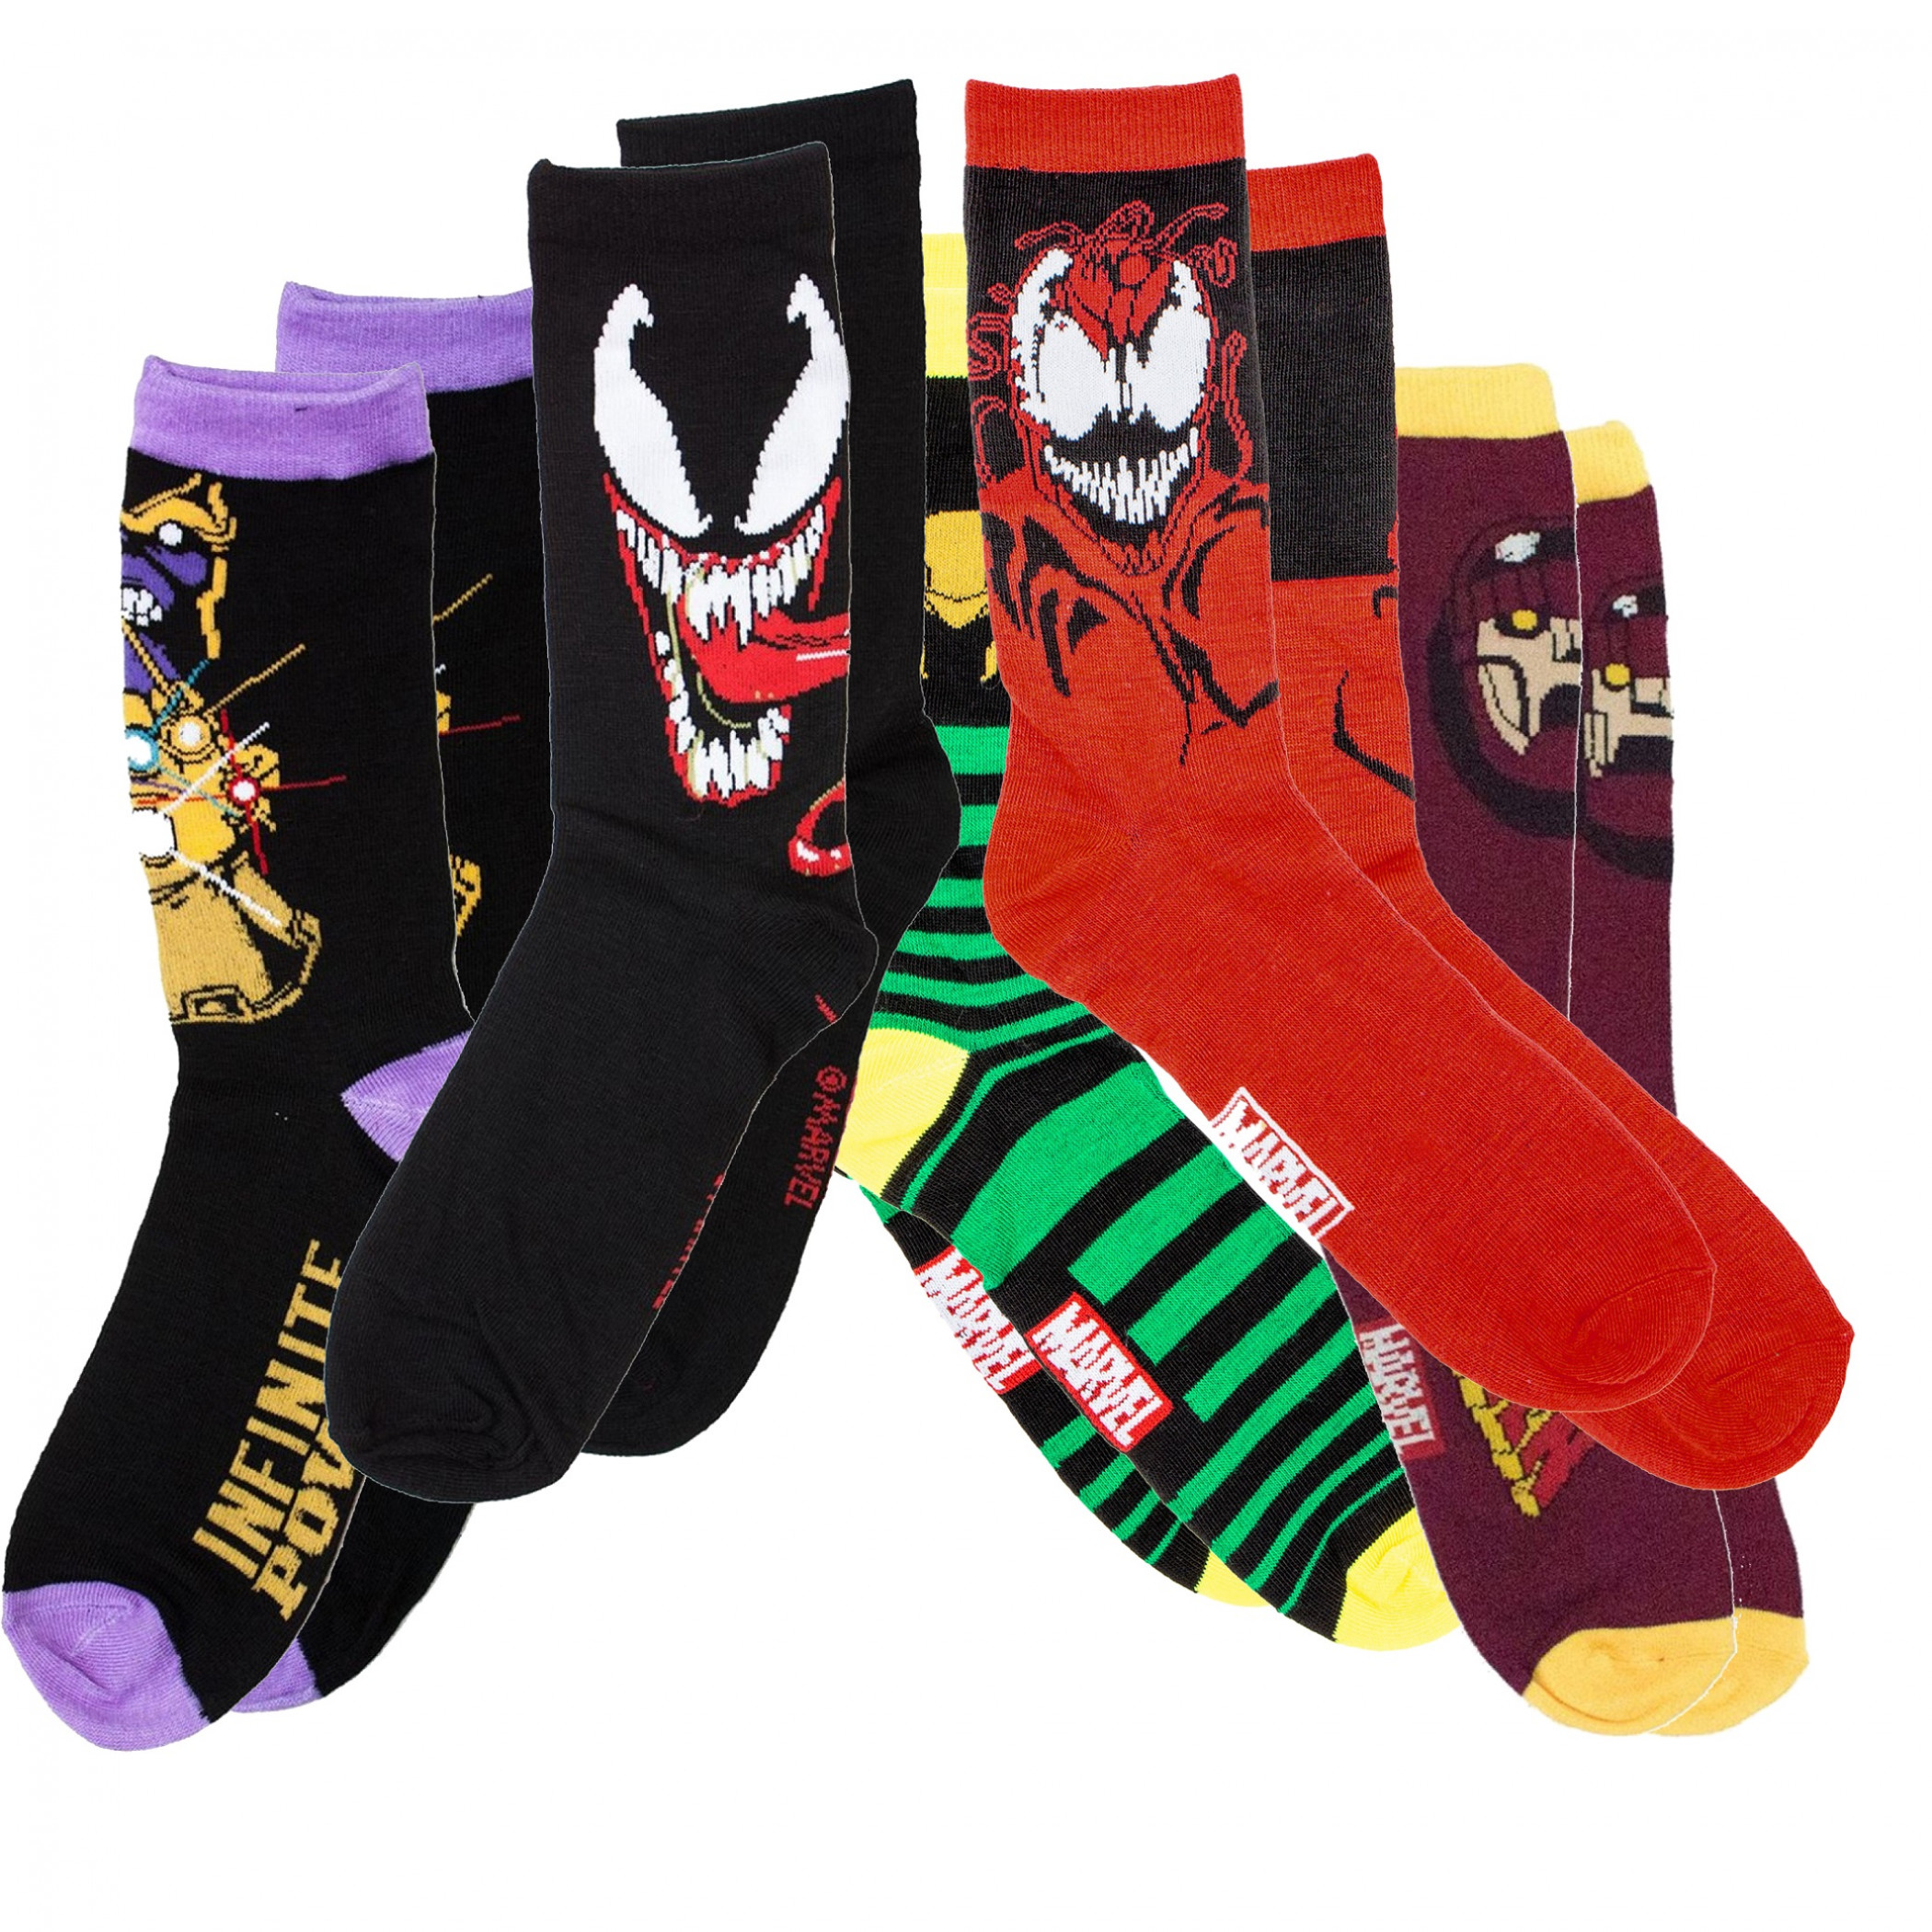 Marvel Villains 5Pair Pack of Crew Socks